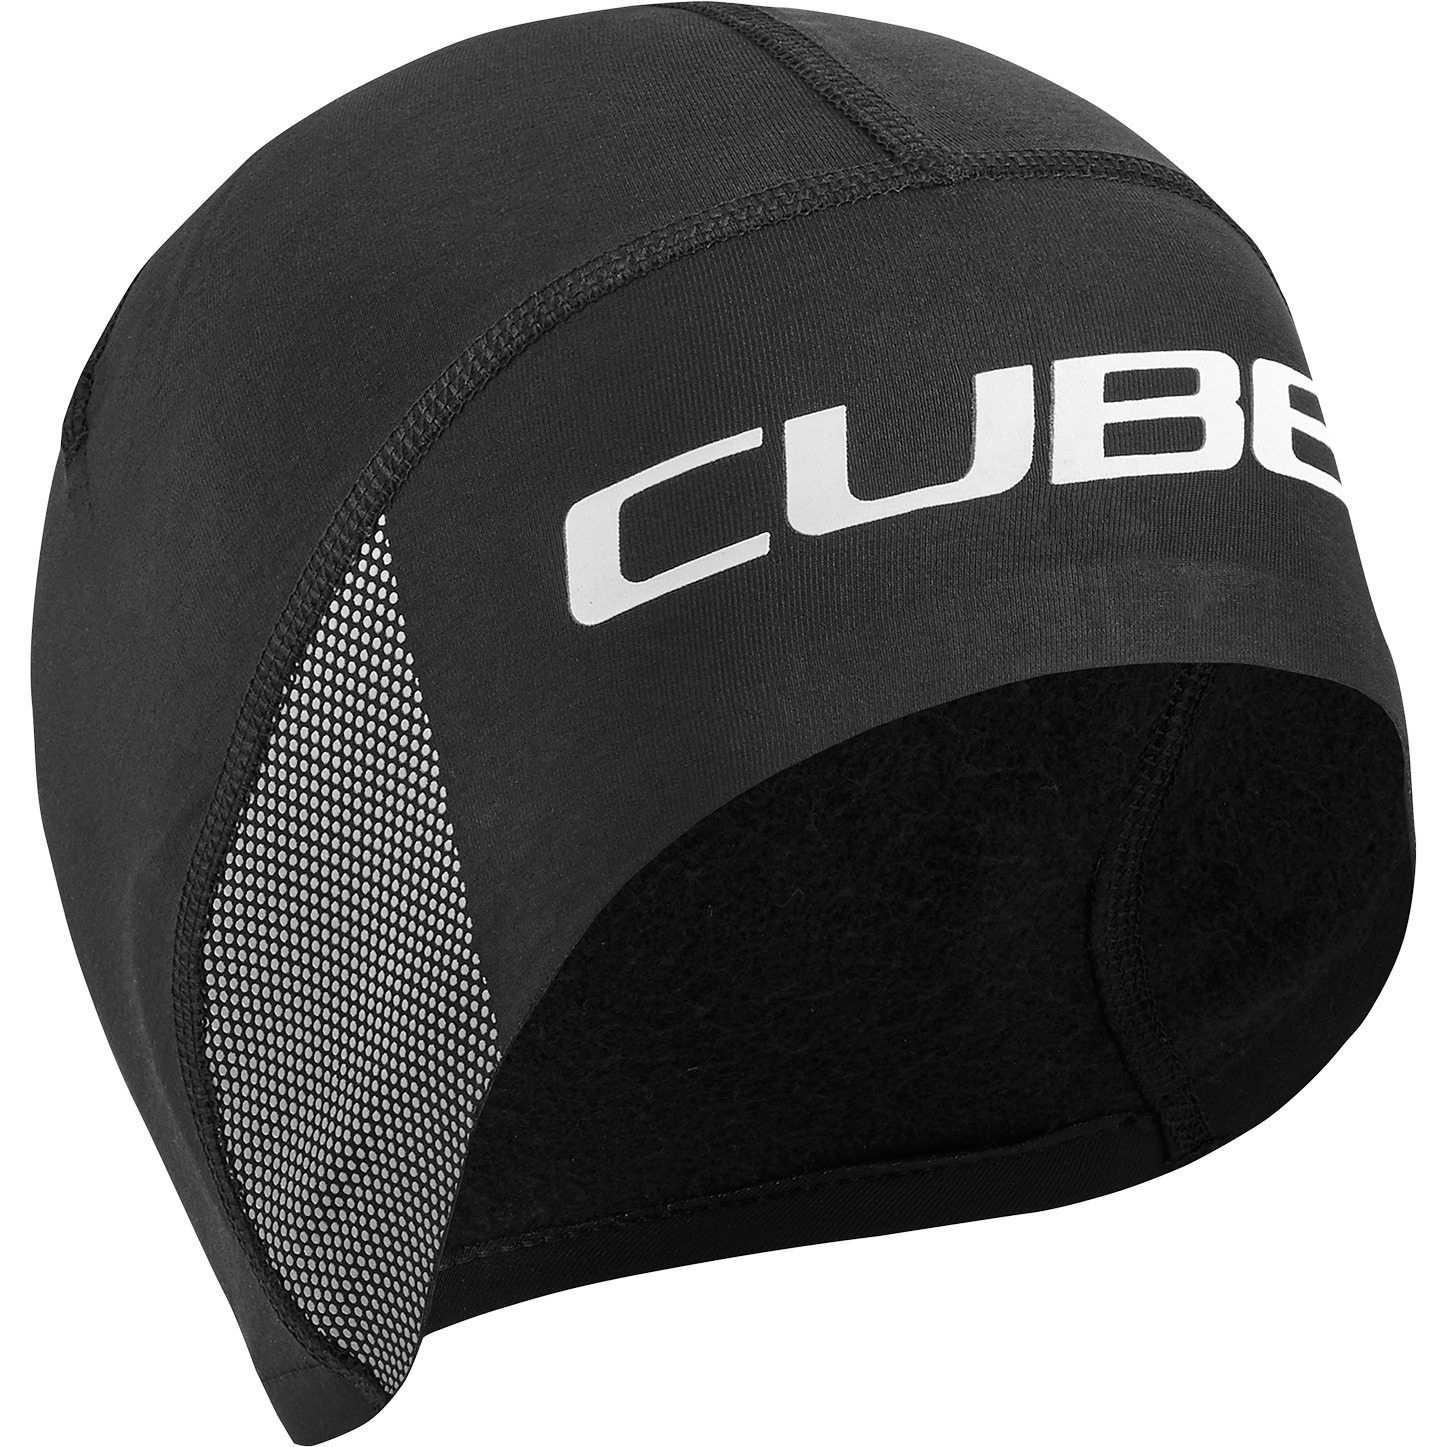 Produktbild von CUBE Helmmütze - schwarz